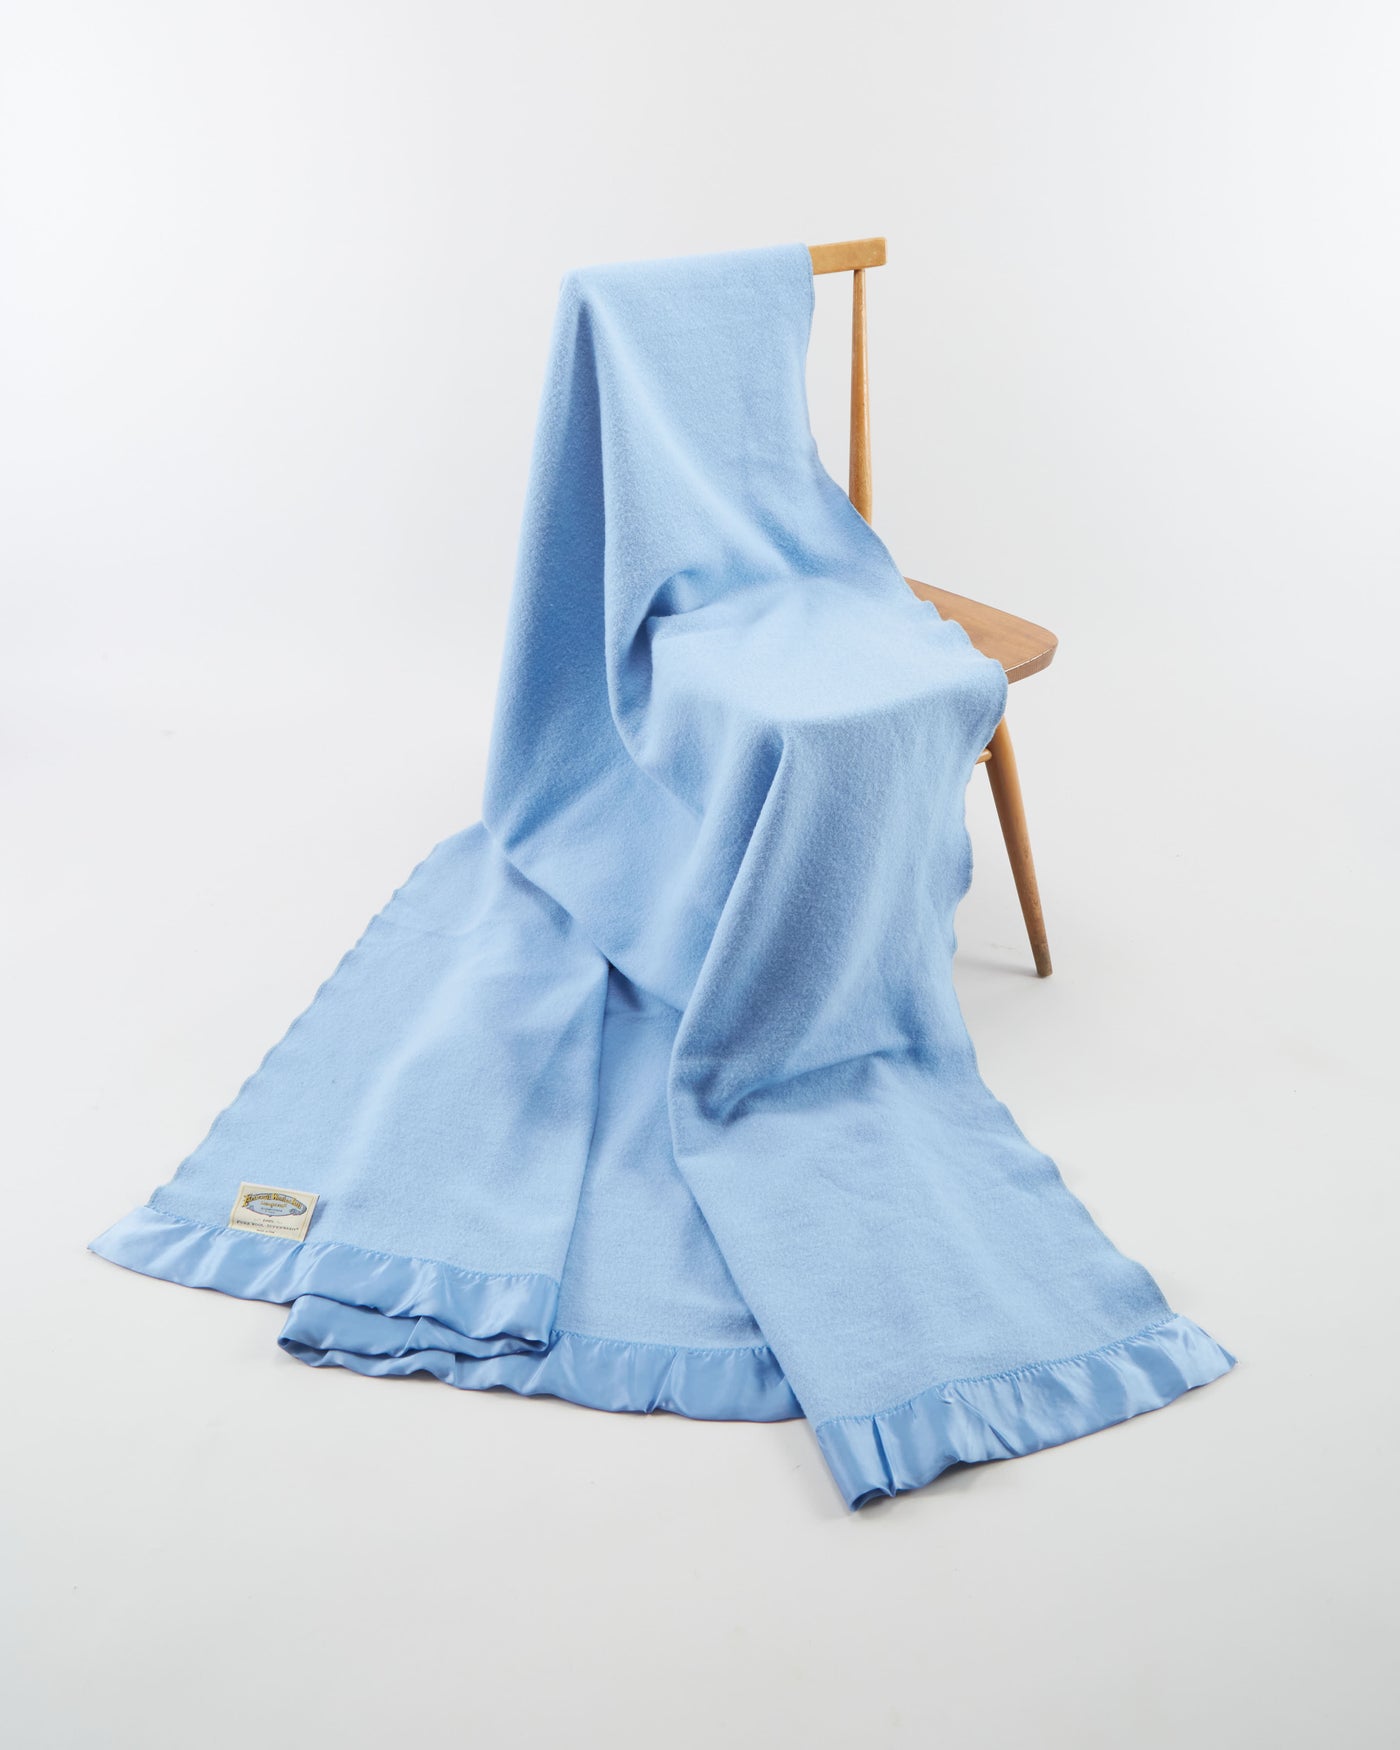 Faribault Woolen Mill Blue Blanket